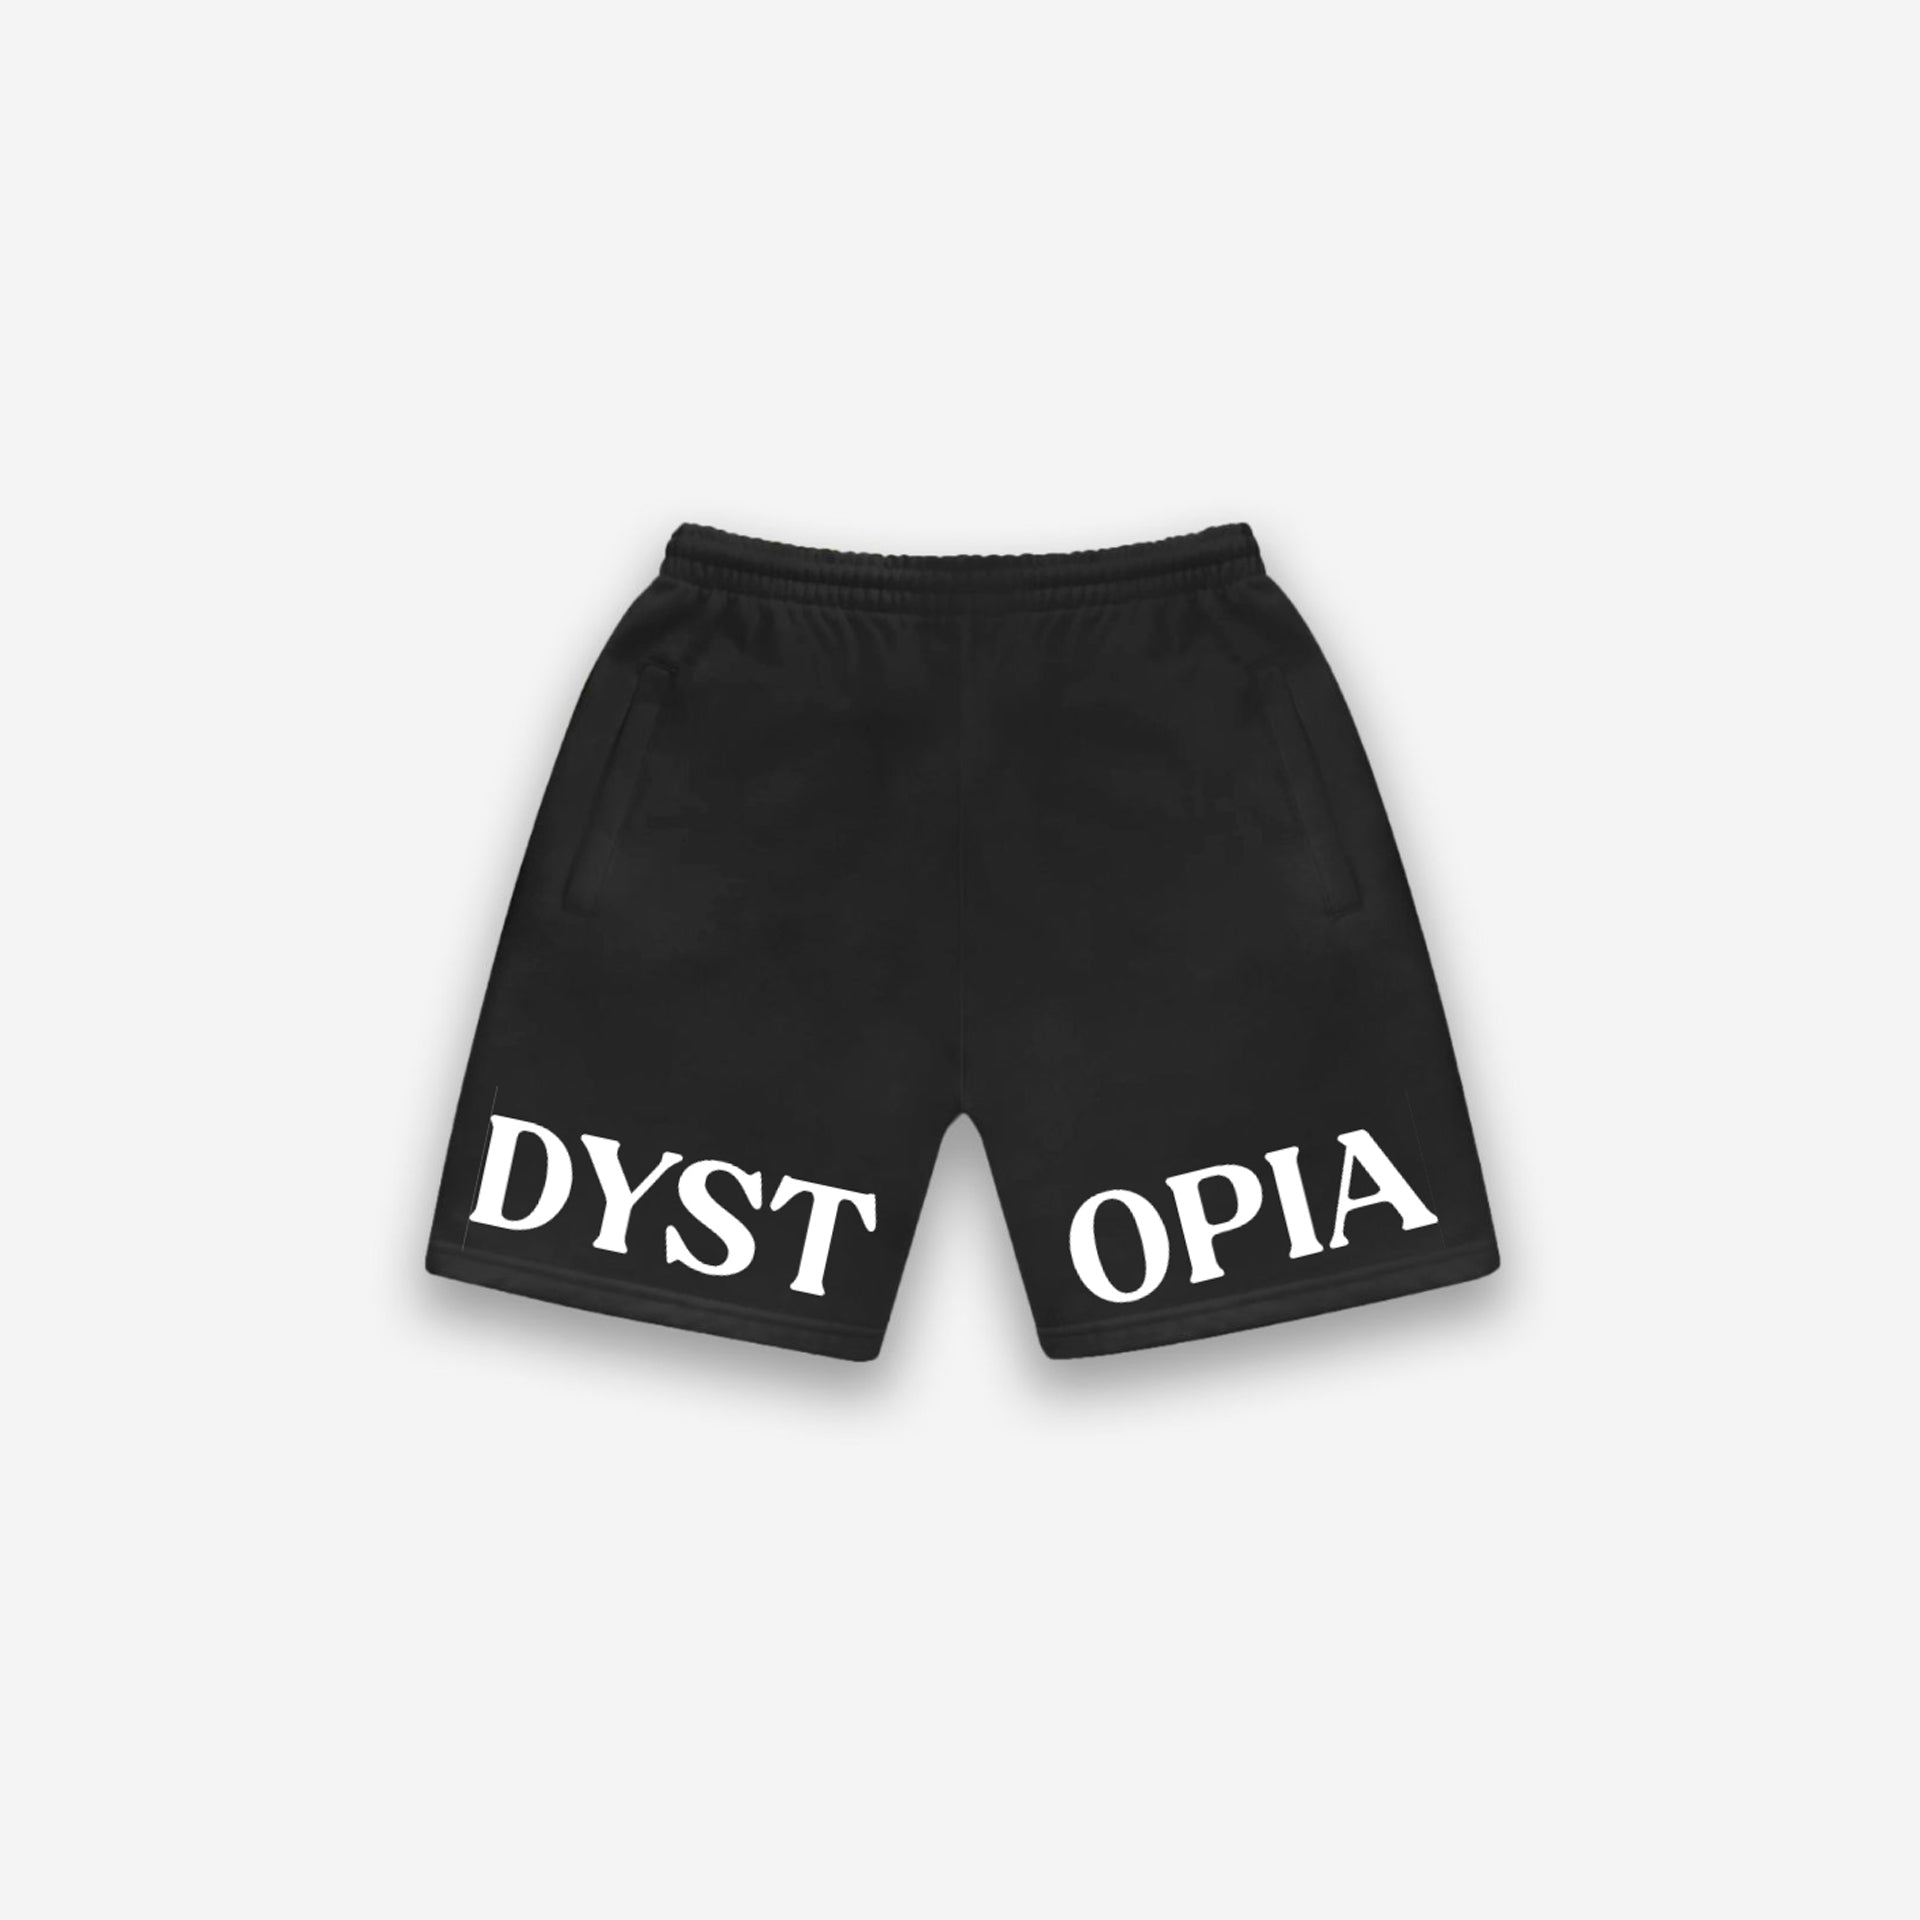 Black Dystopia Logo Shorts From Dystopia